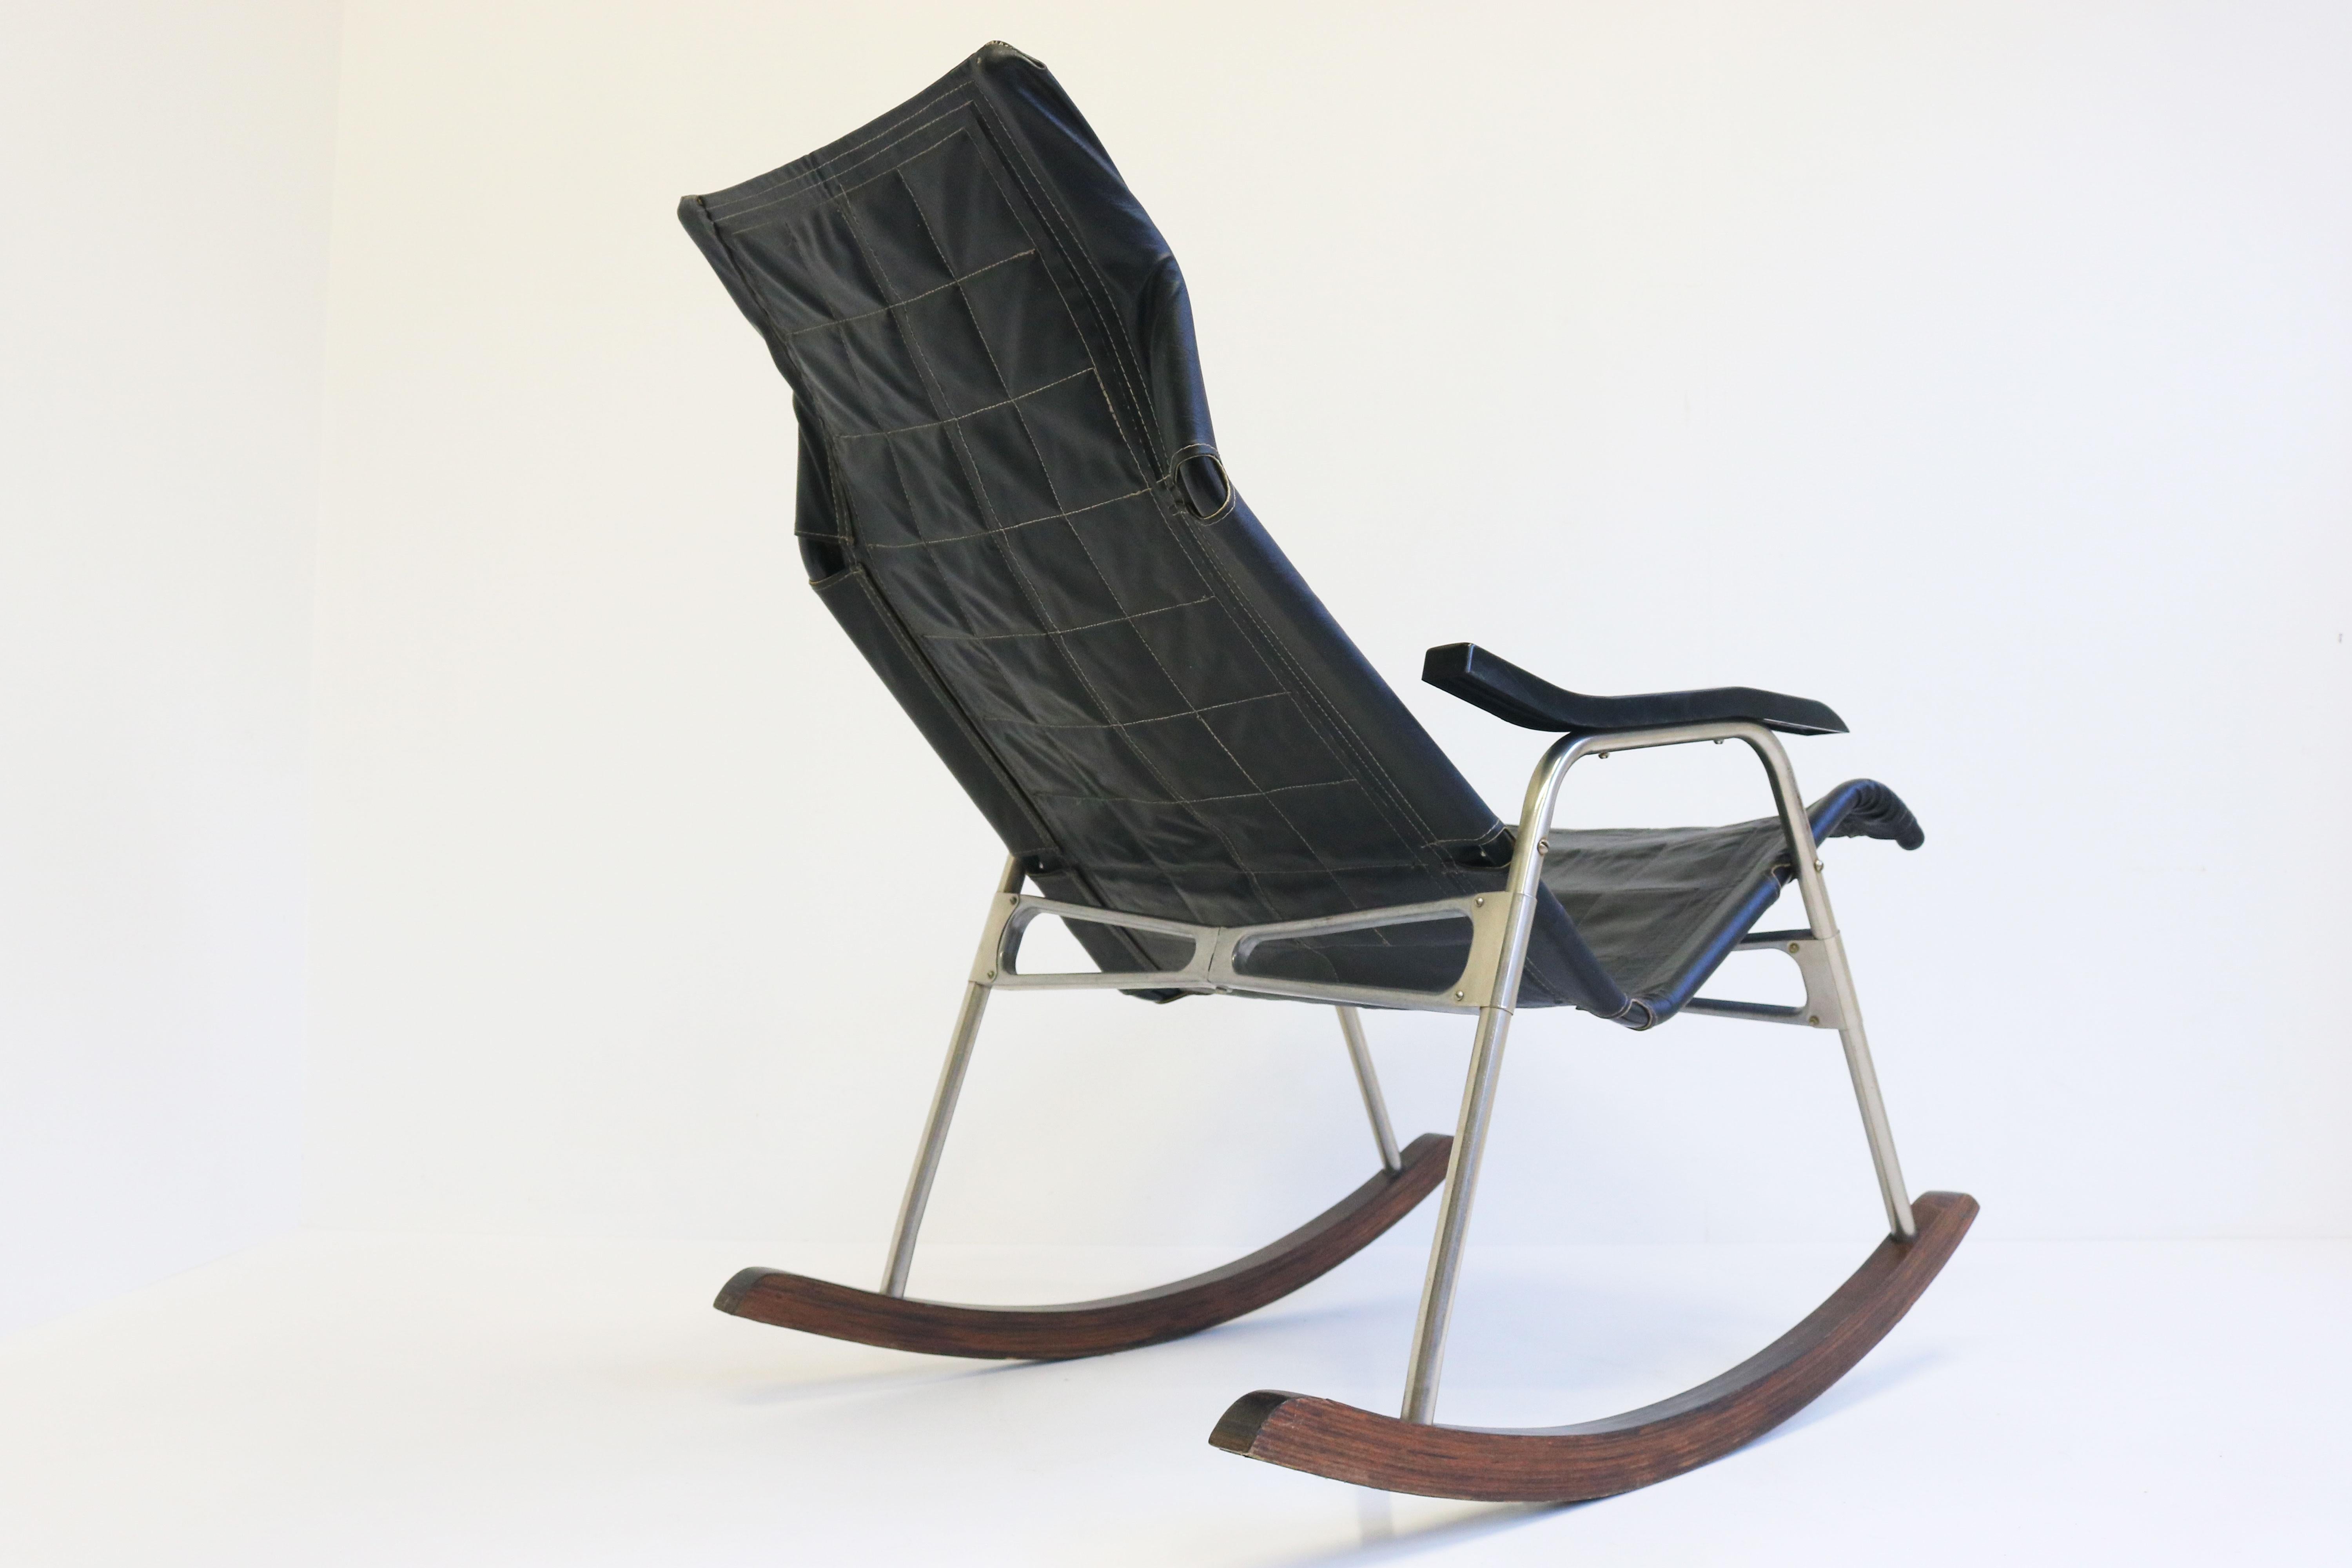 Voici une pièce étonnante et emblématique du mobilier moderne du milieu du siècle : ce rocking-chair en cuir noir de Takeshi Nii, conçu en 1960 au Japon.
Fabriqué à partir de cuir noir de première qualité et d'un cadre en métal chromé, ce fauteuil à